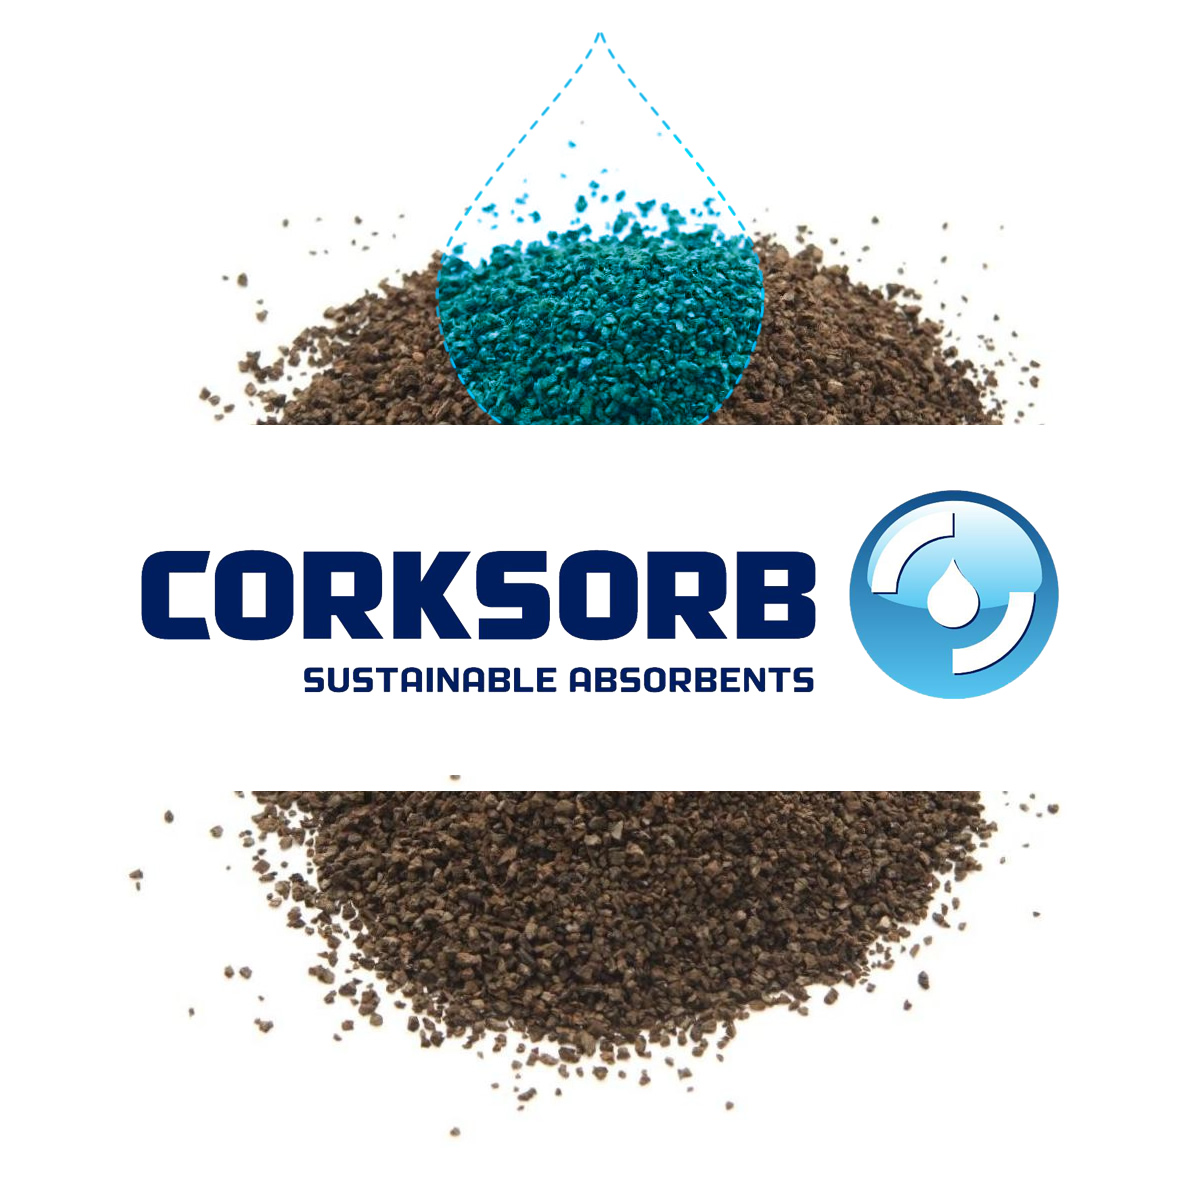 (c) Corksorb.com